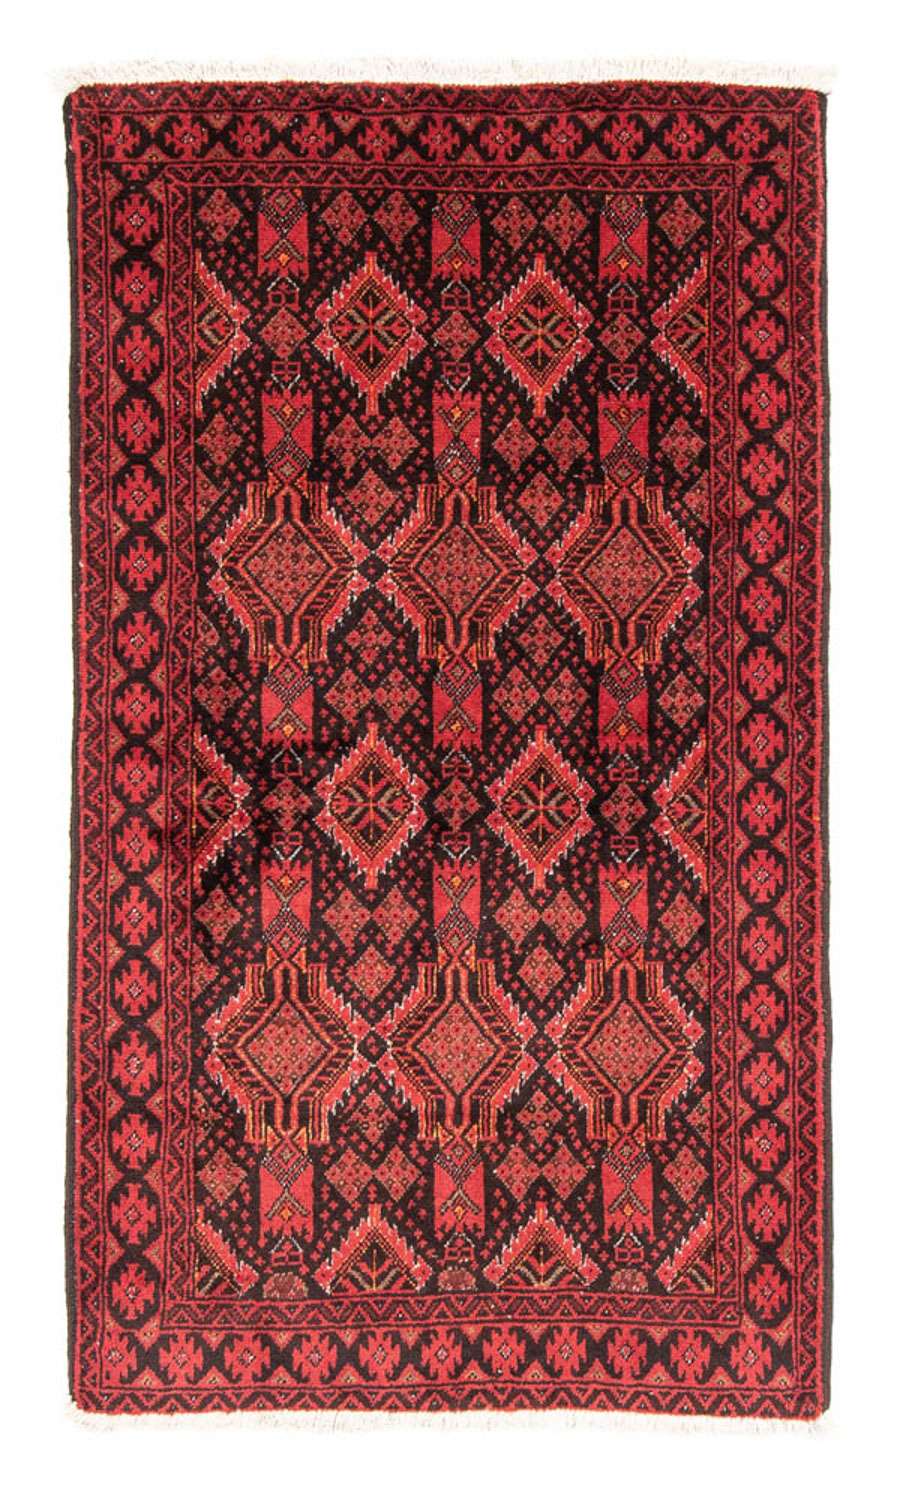 Biegacz Dywan beludżycki - 181 x 102 cm - czerwony